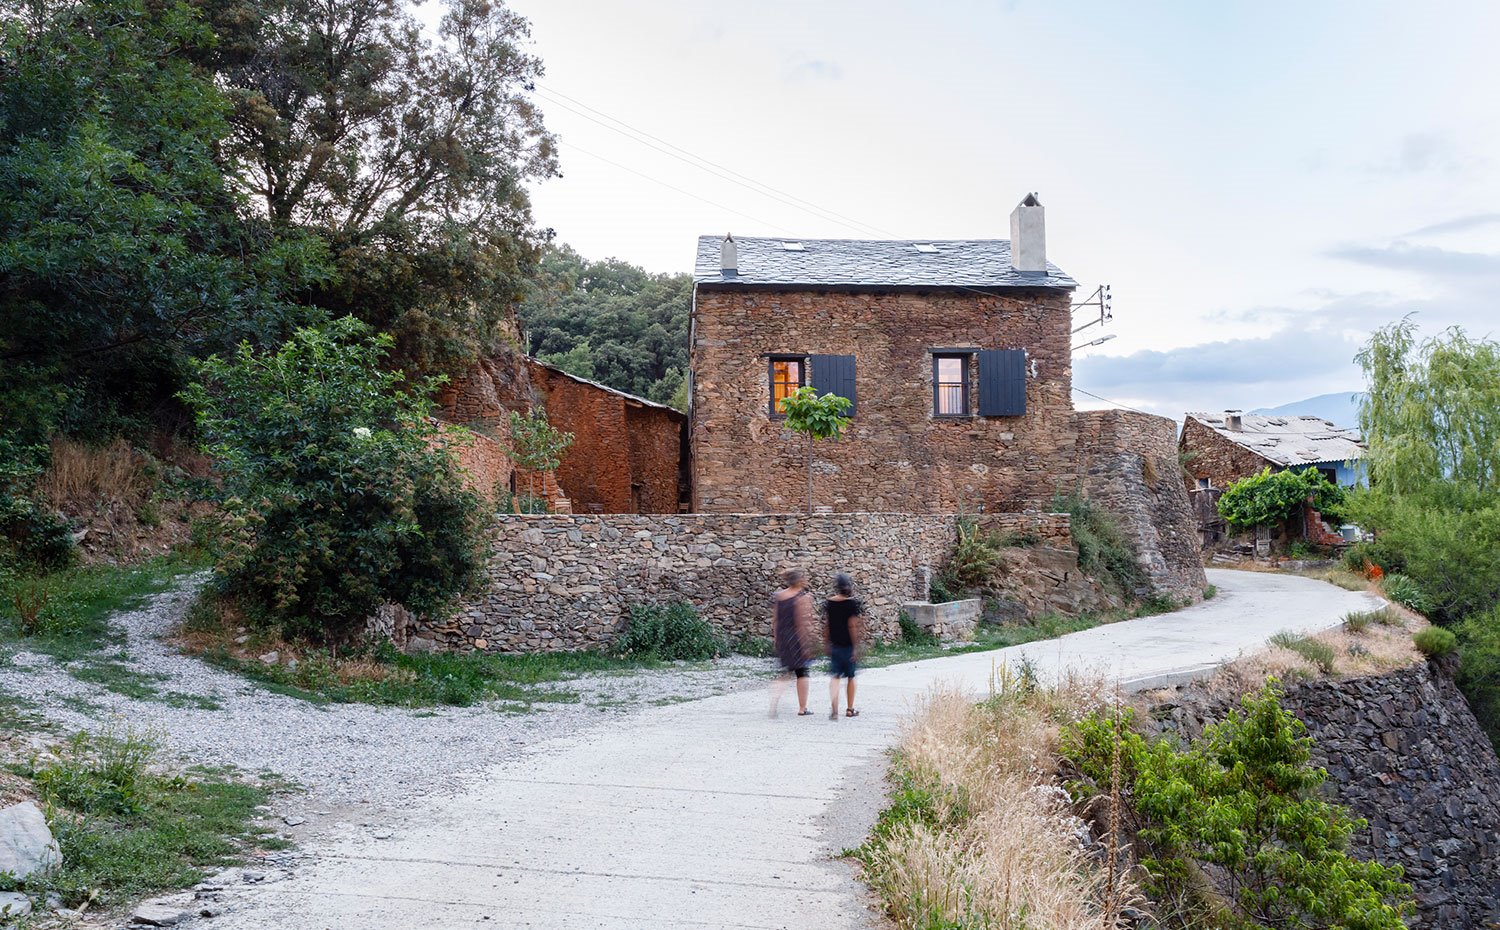 Vista exterior de la vivienda en ambiente rural con camino de acceso de piedra